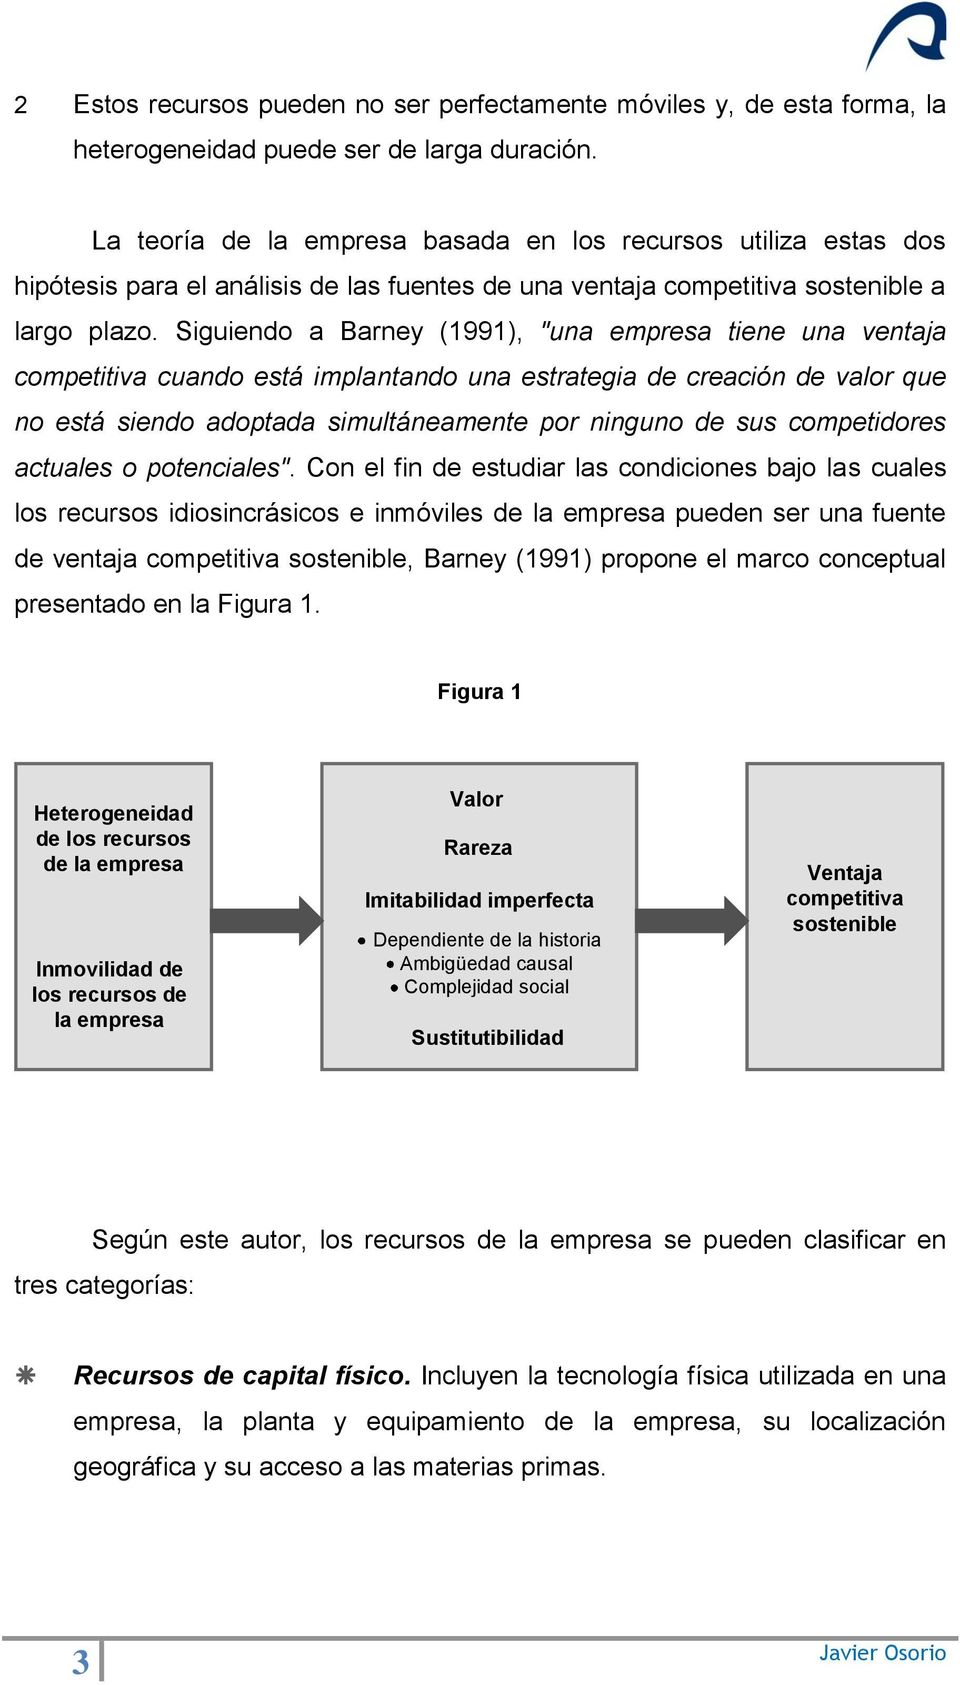 Siguiendo a Barney (1991), "una empresa tiene una ventaja competitiva cuando está implantando una estrategia de creación de valor que no está siendo adoptada simultáneamente por ninguno de sus